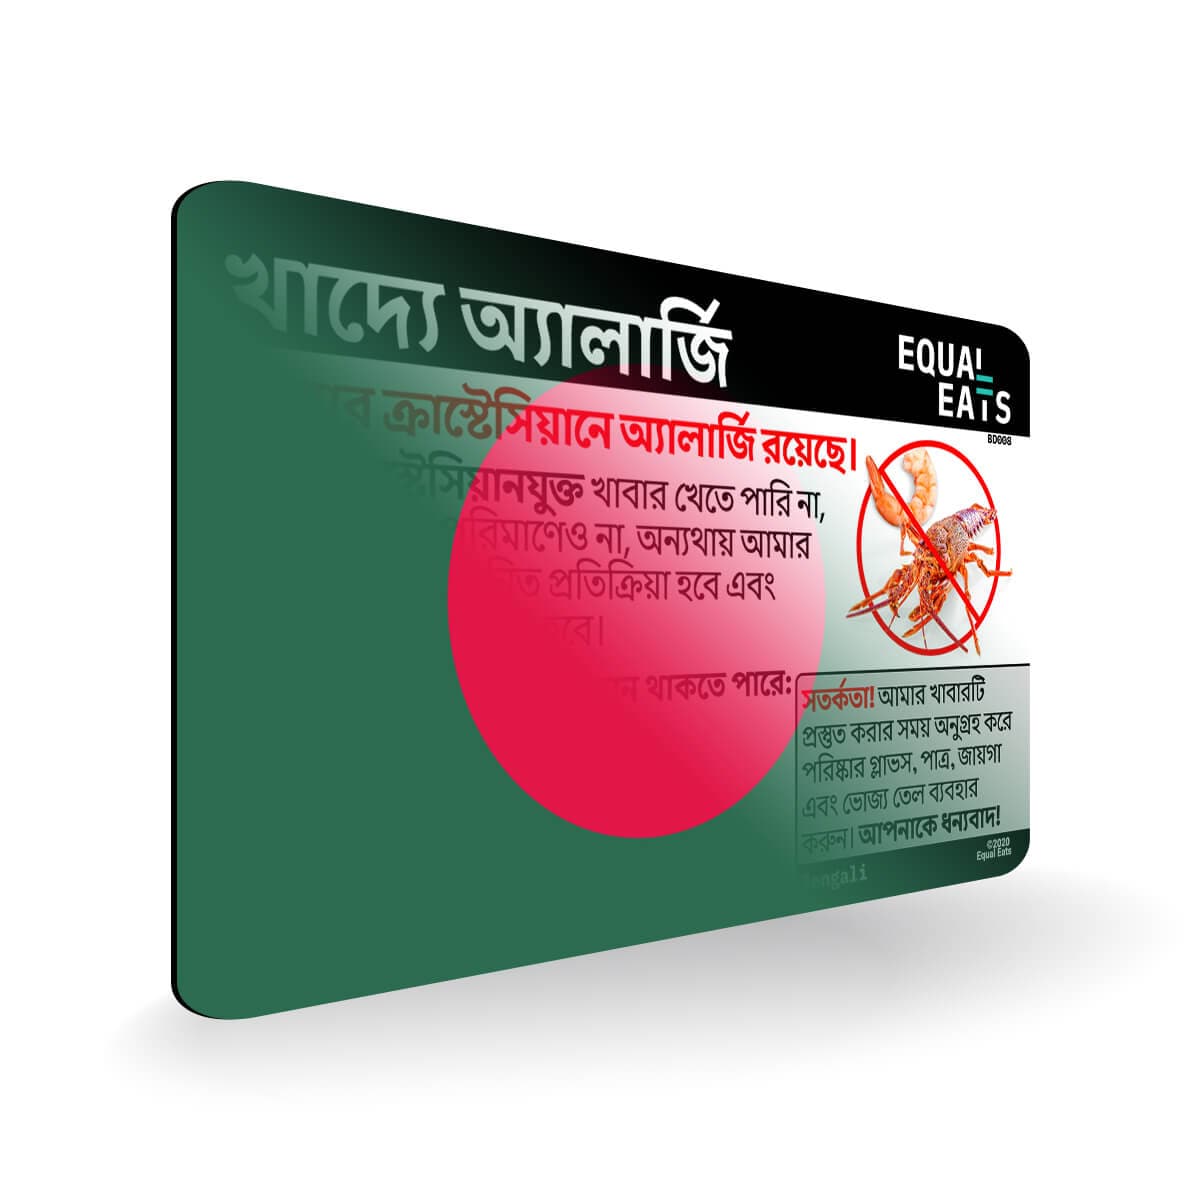 Crustacean Allergy in Bengali. Crustacean Allergy Card for Bangladesh